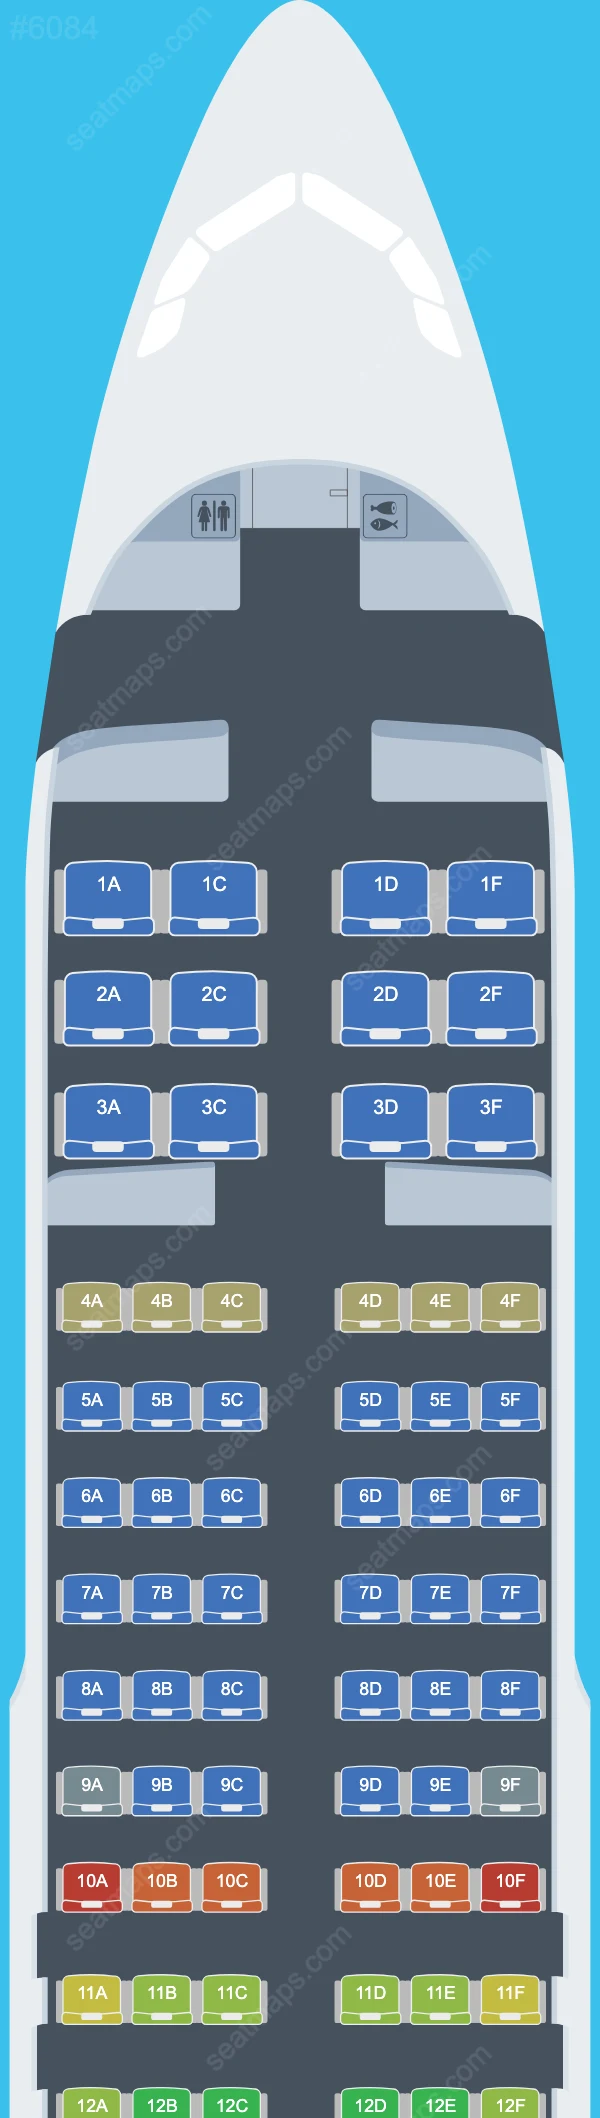 Rossiya Airbus A320 Seat Maps A320-200 V.2